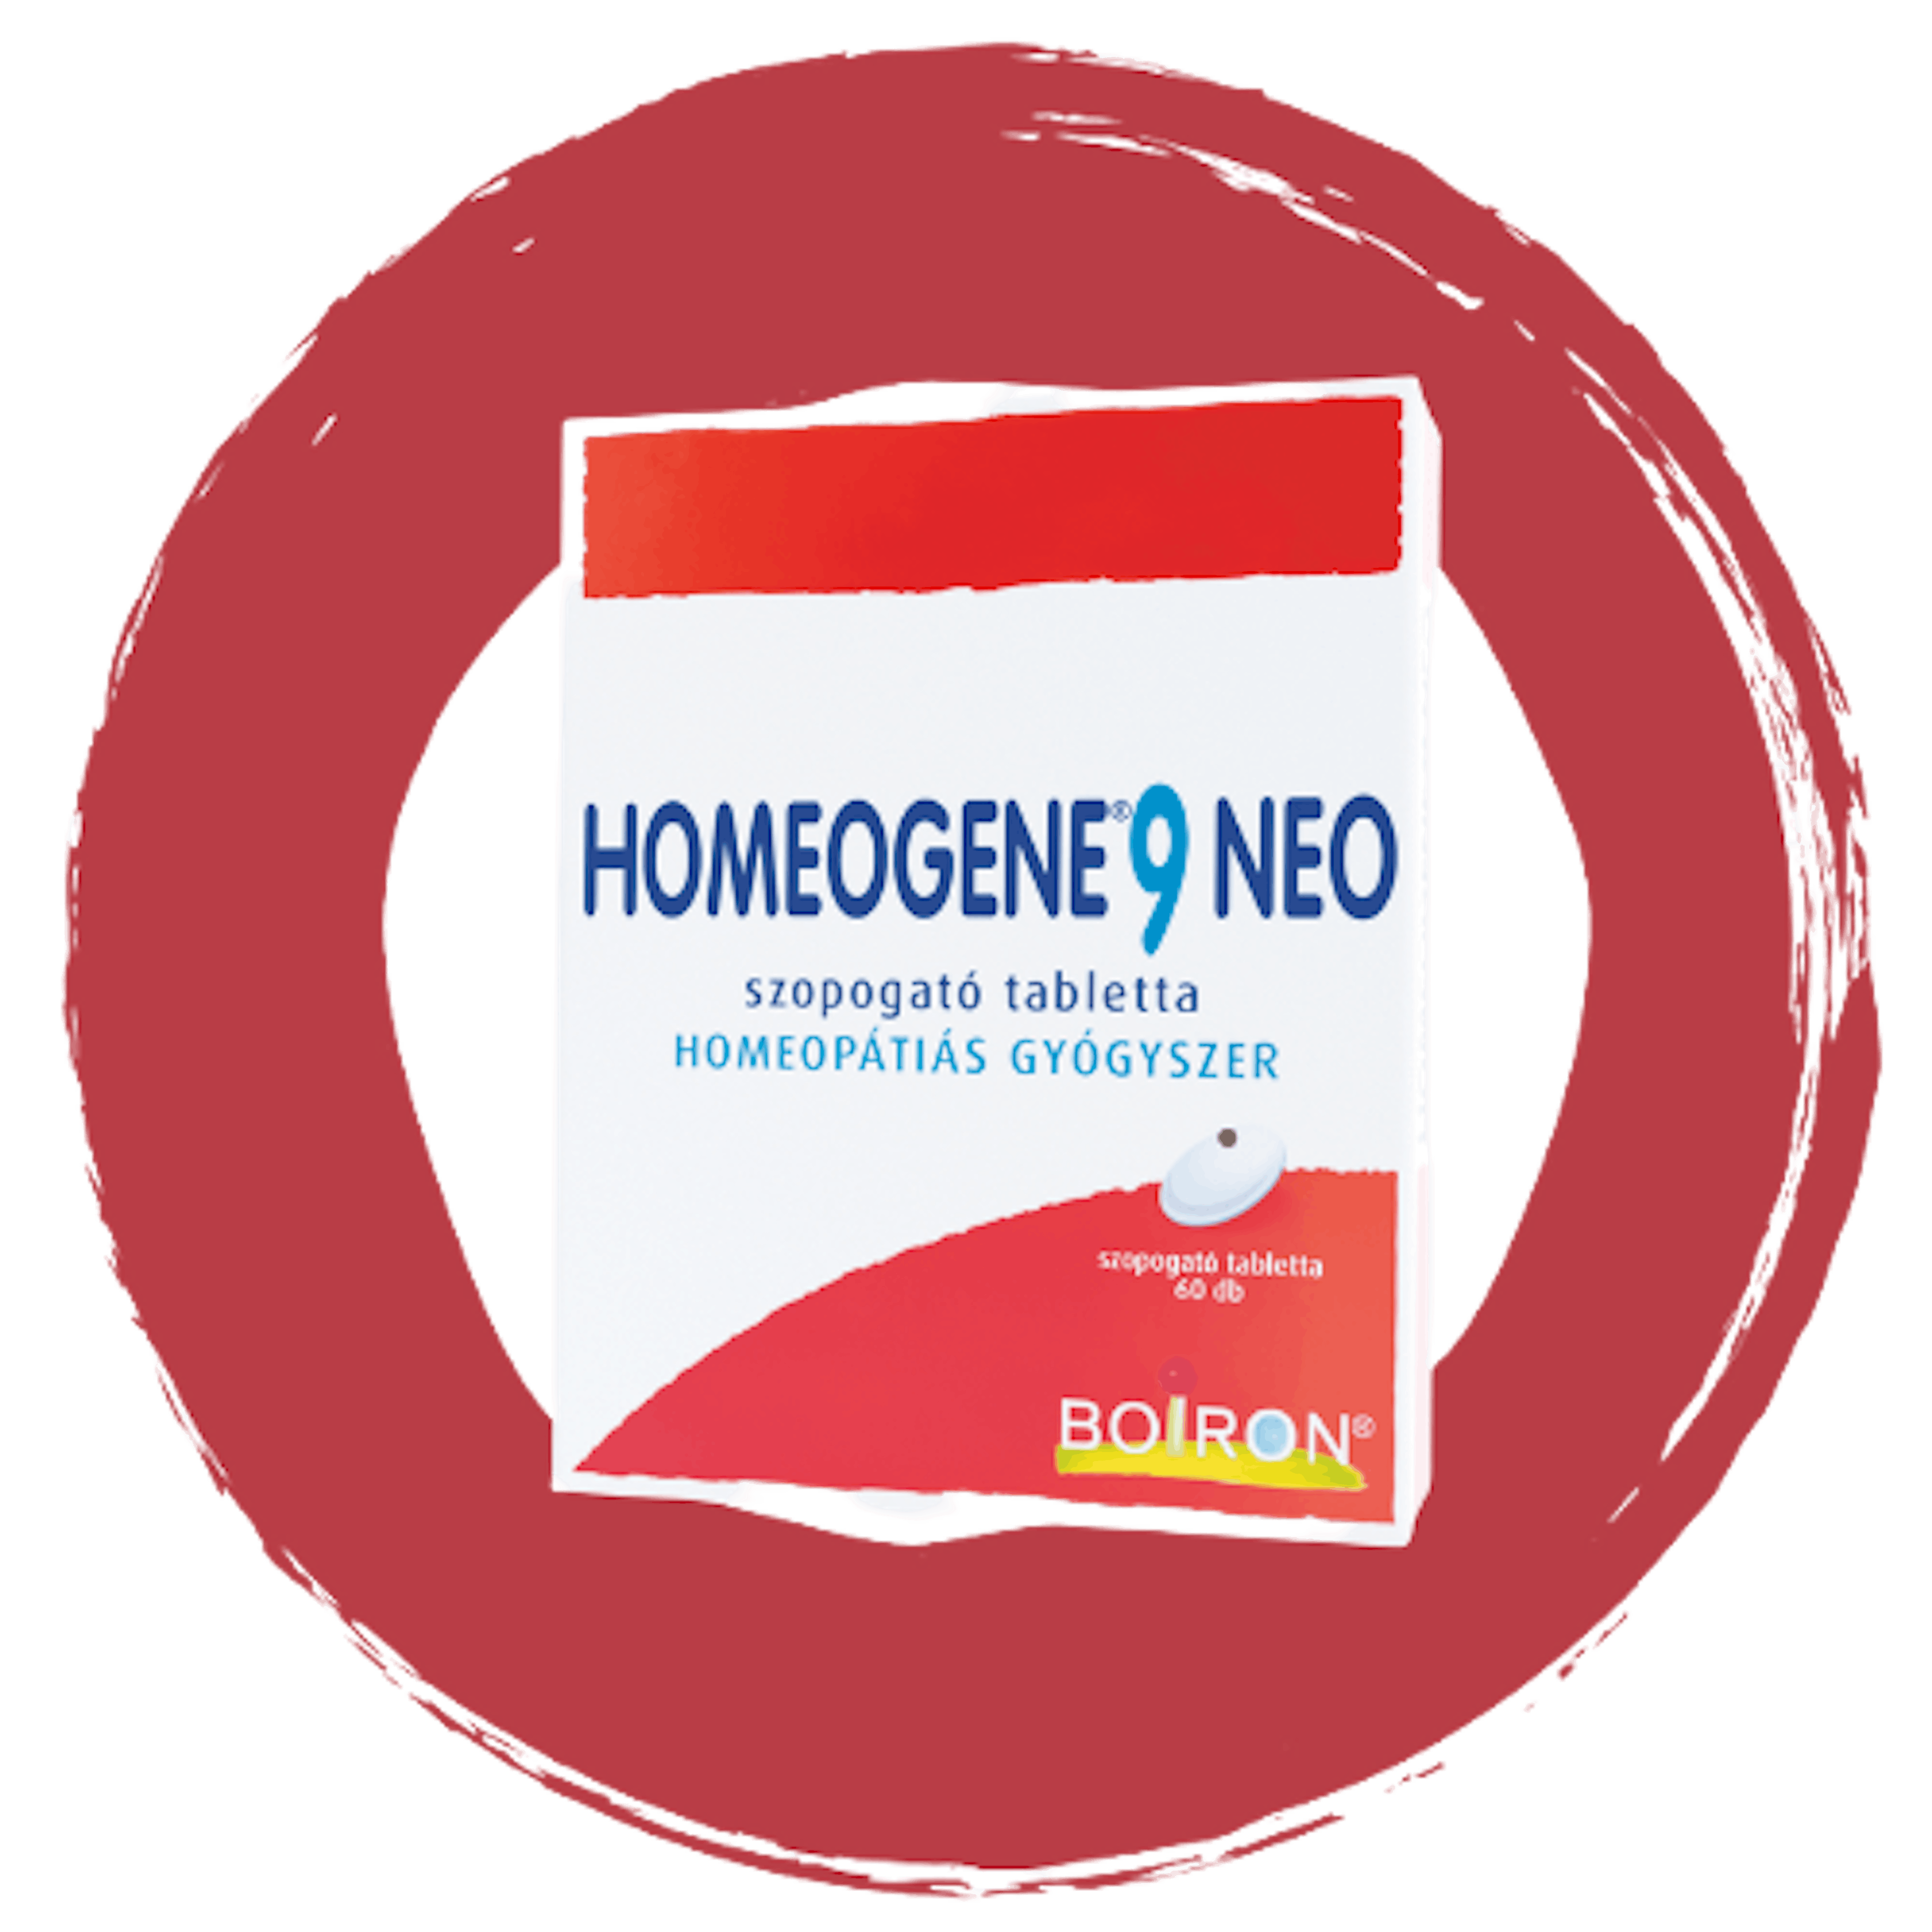 homeogene9neo